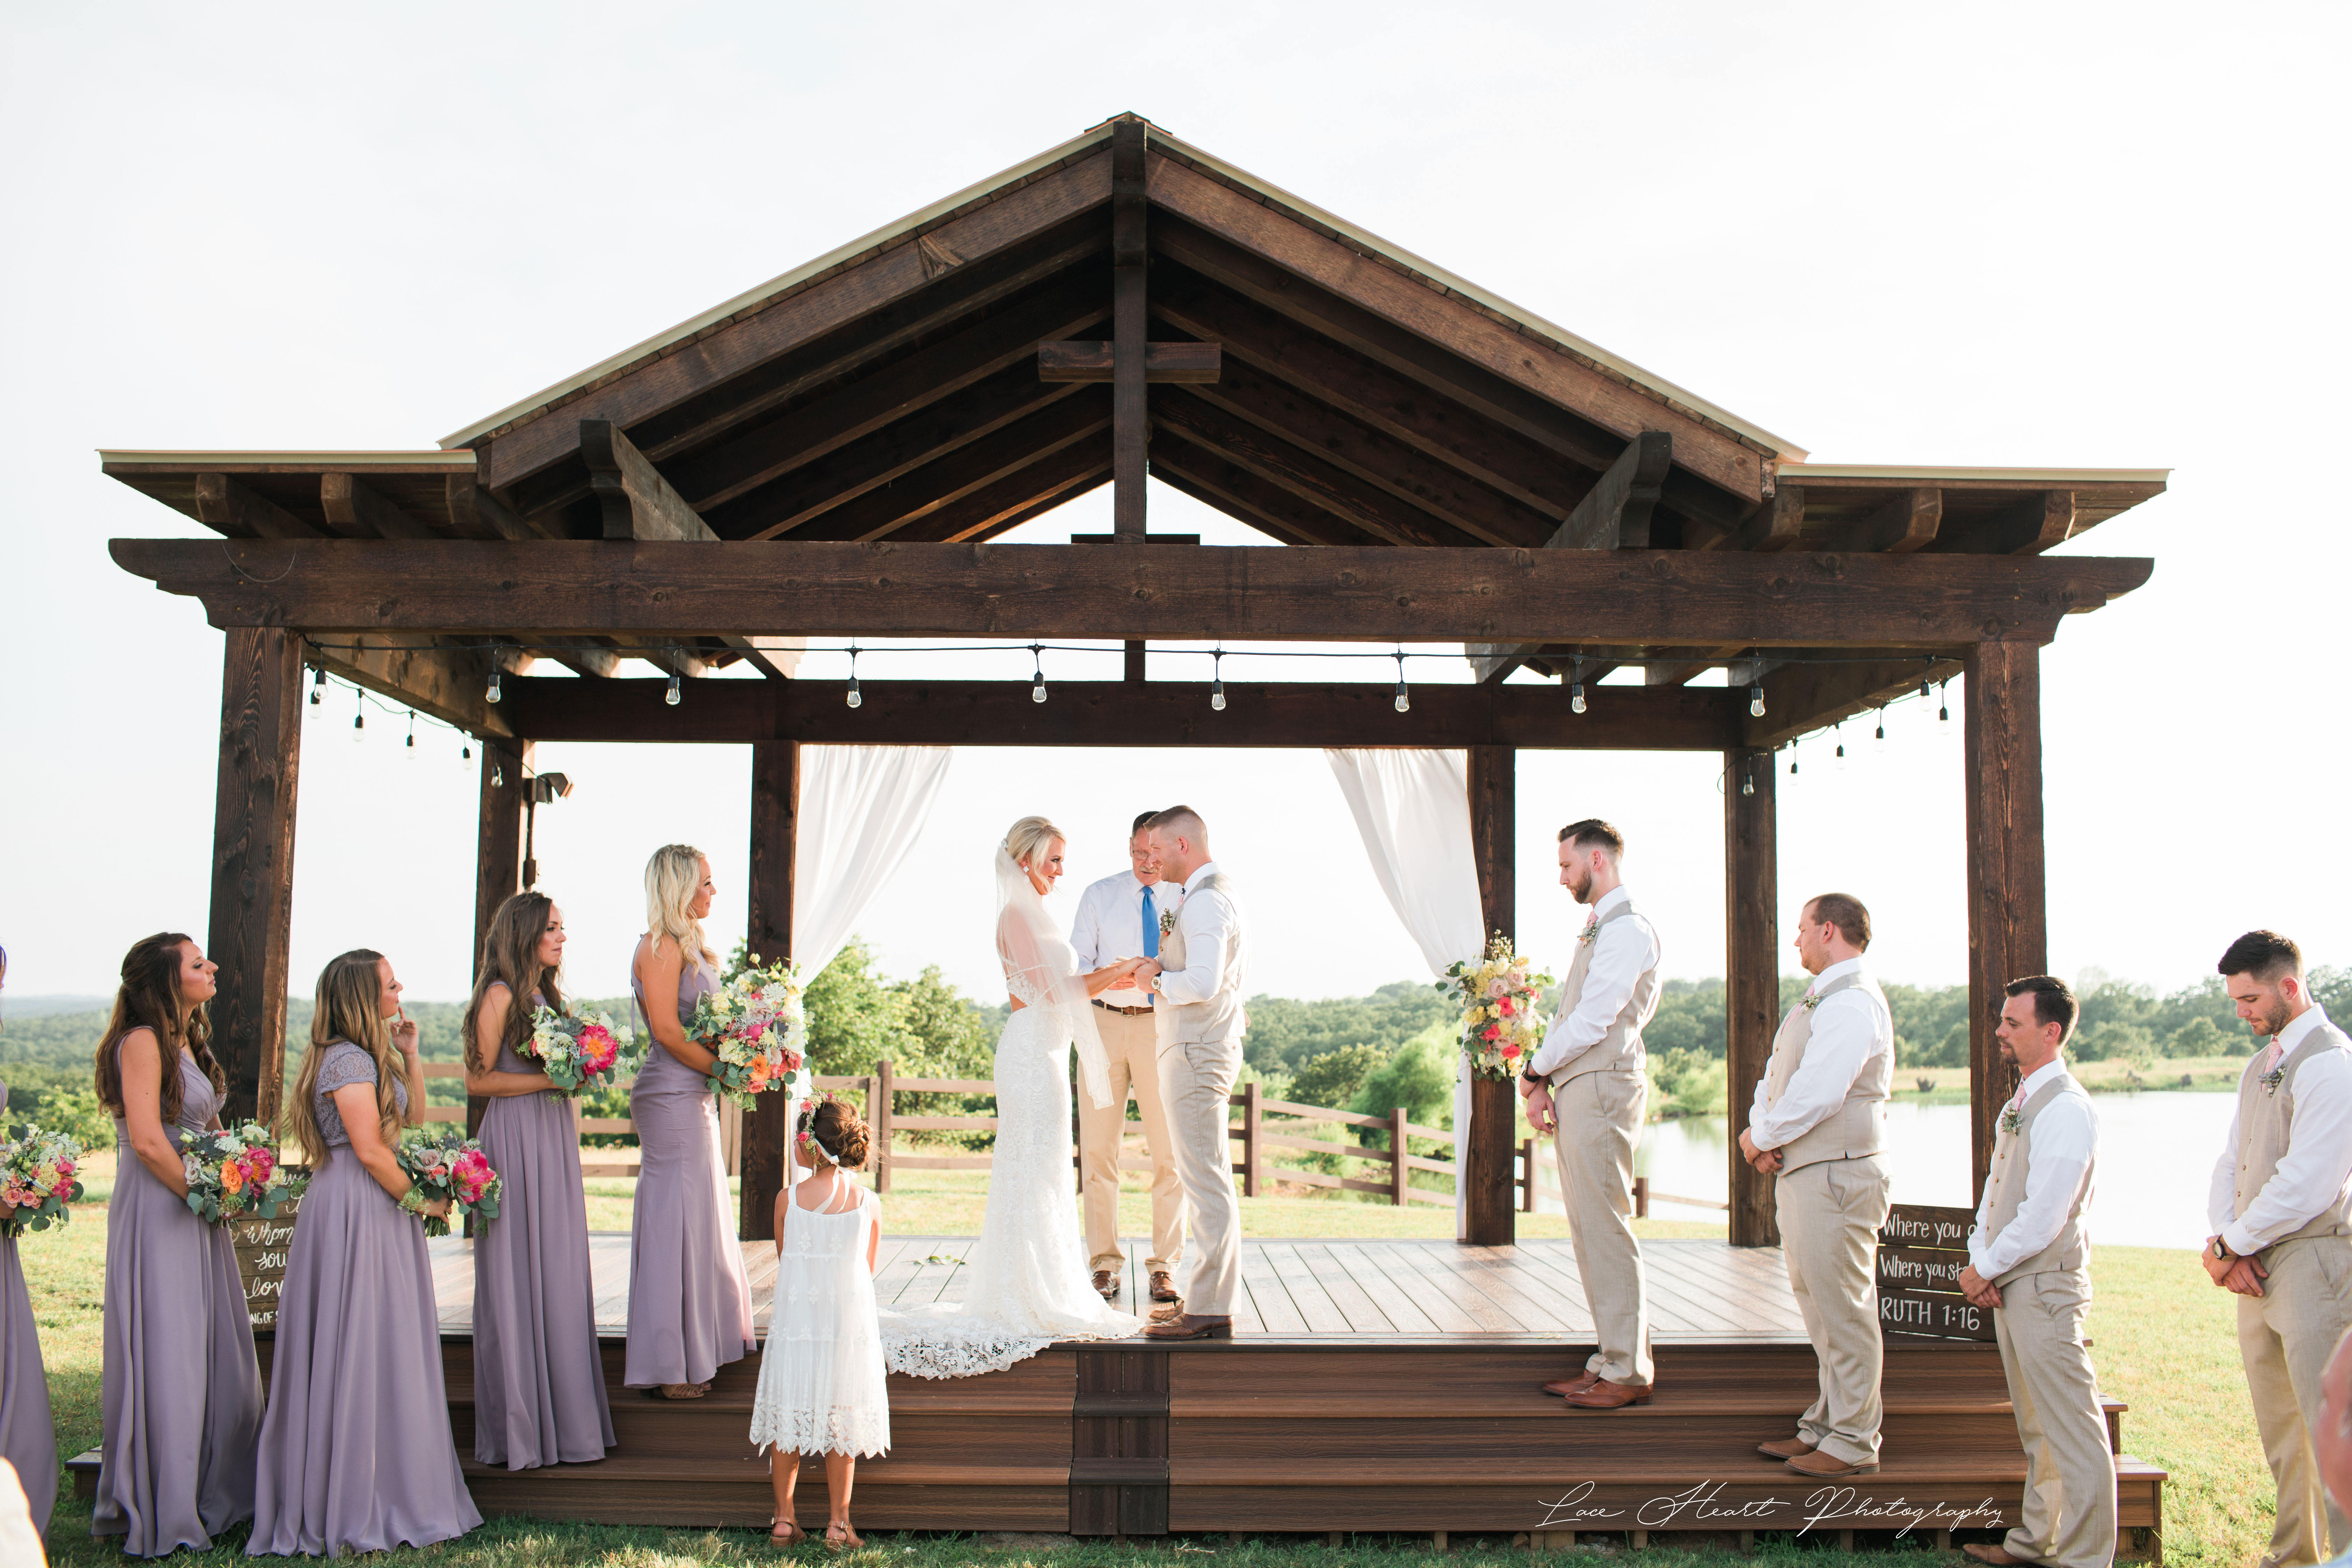 White Barn Events Tulsa Wedding Venues 918 605 3900